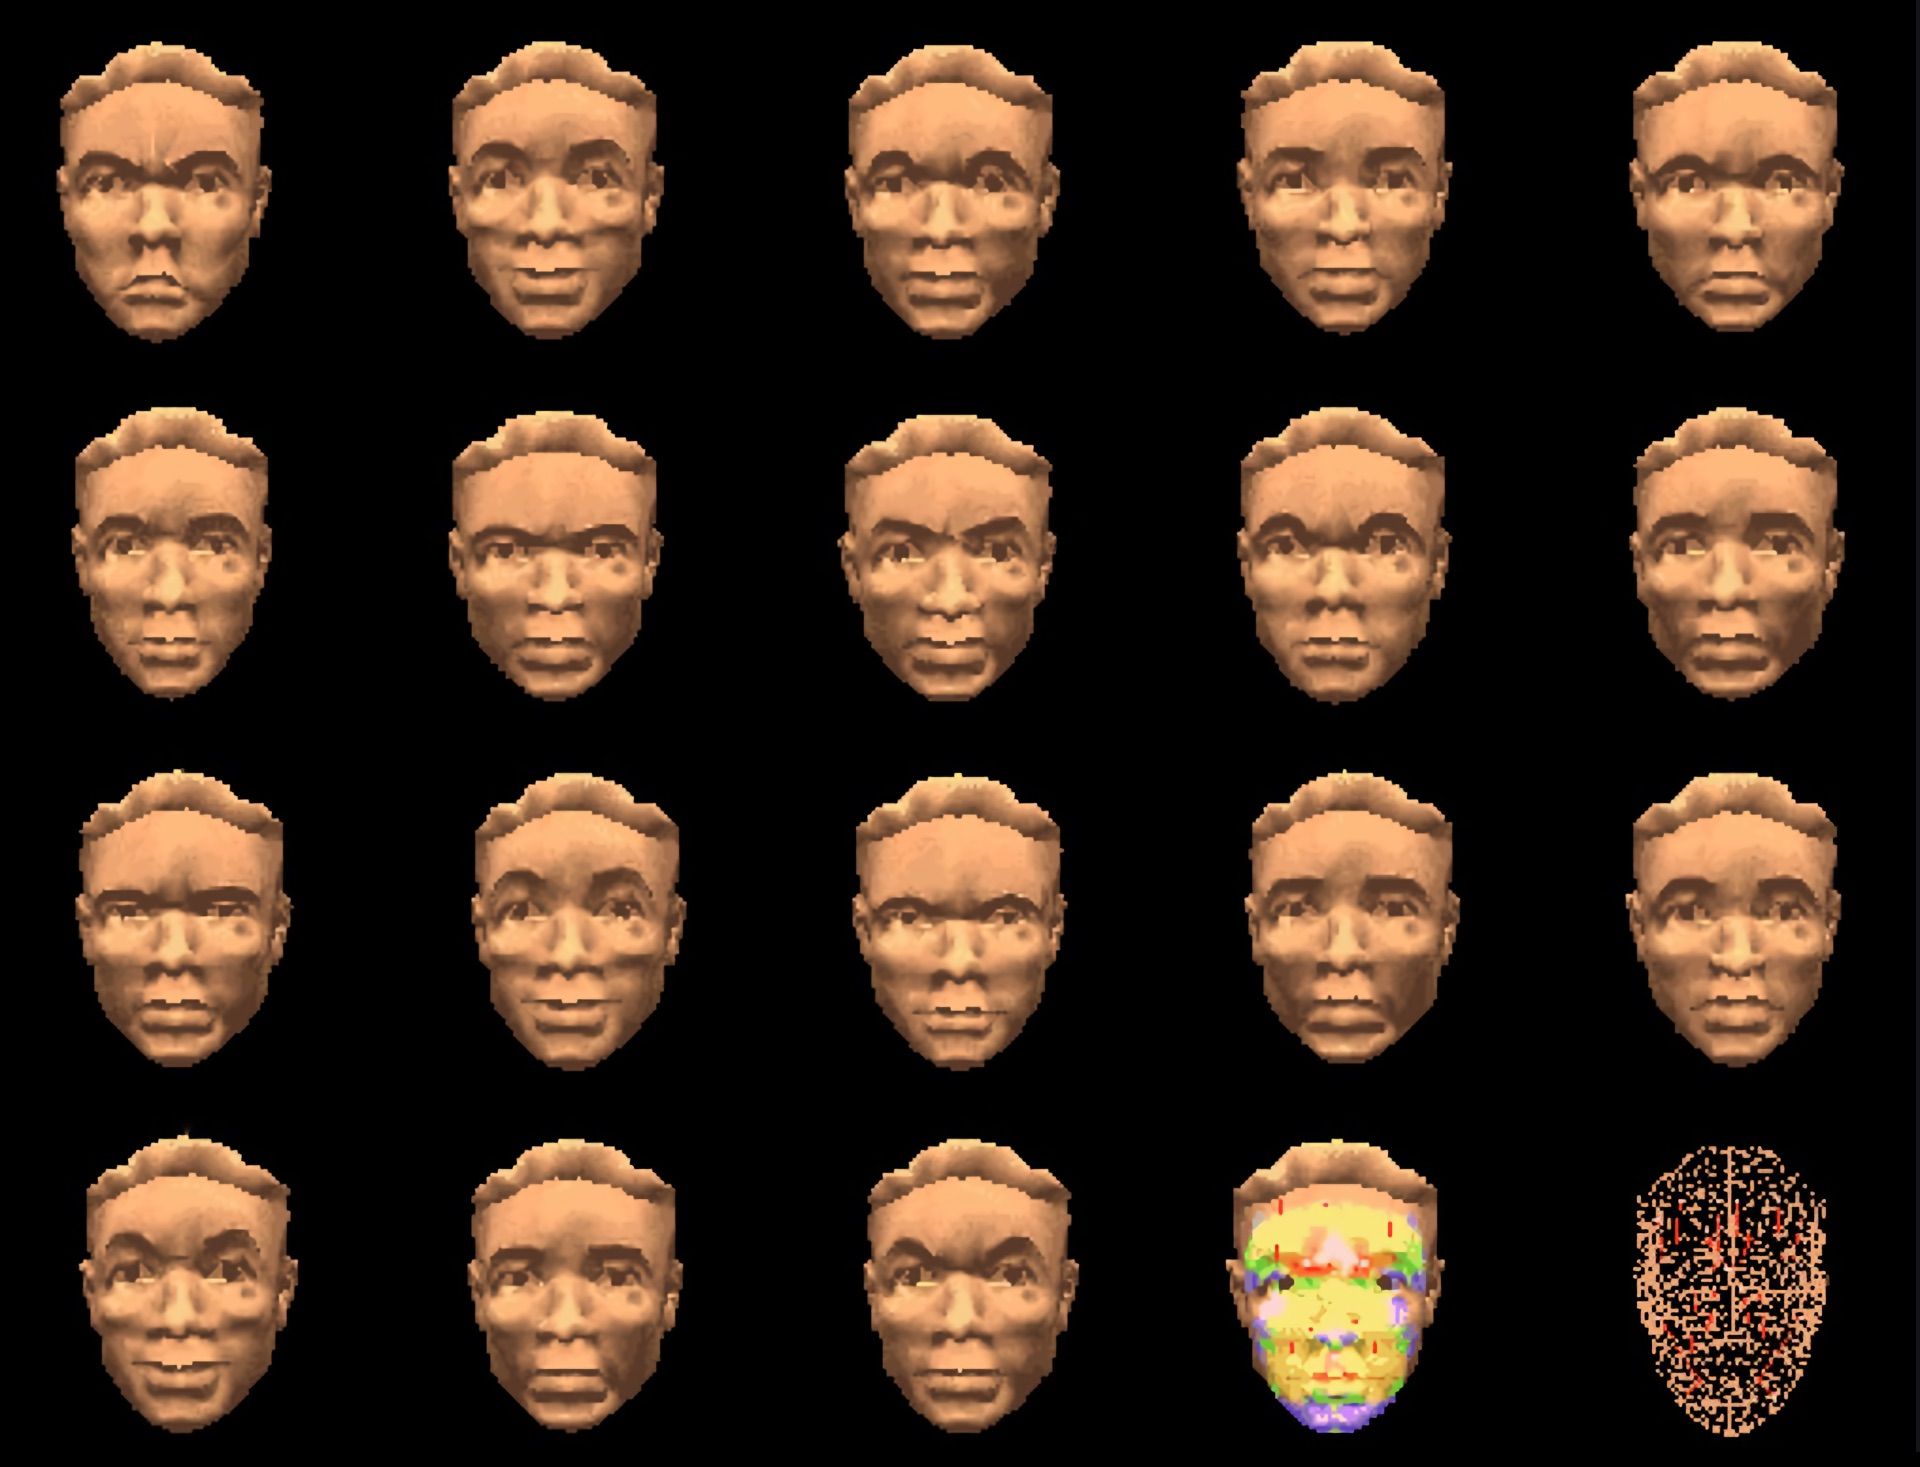 3D faces Chernoff